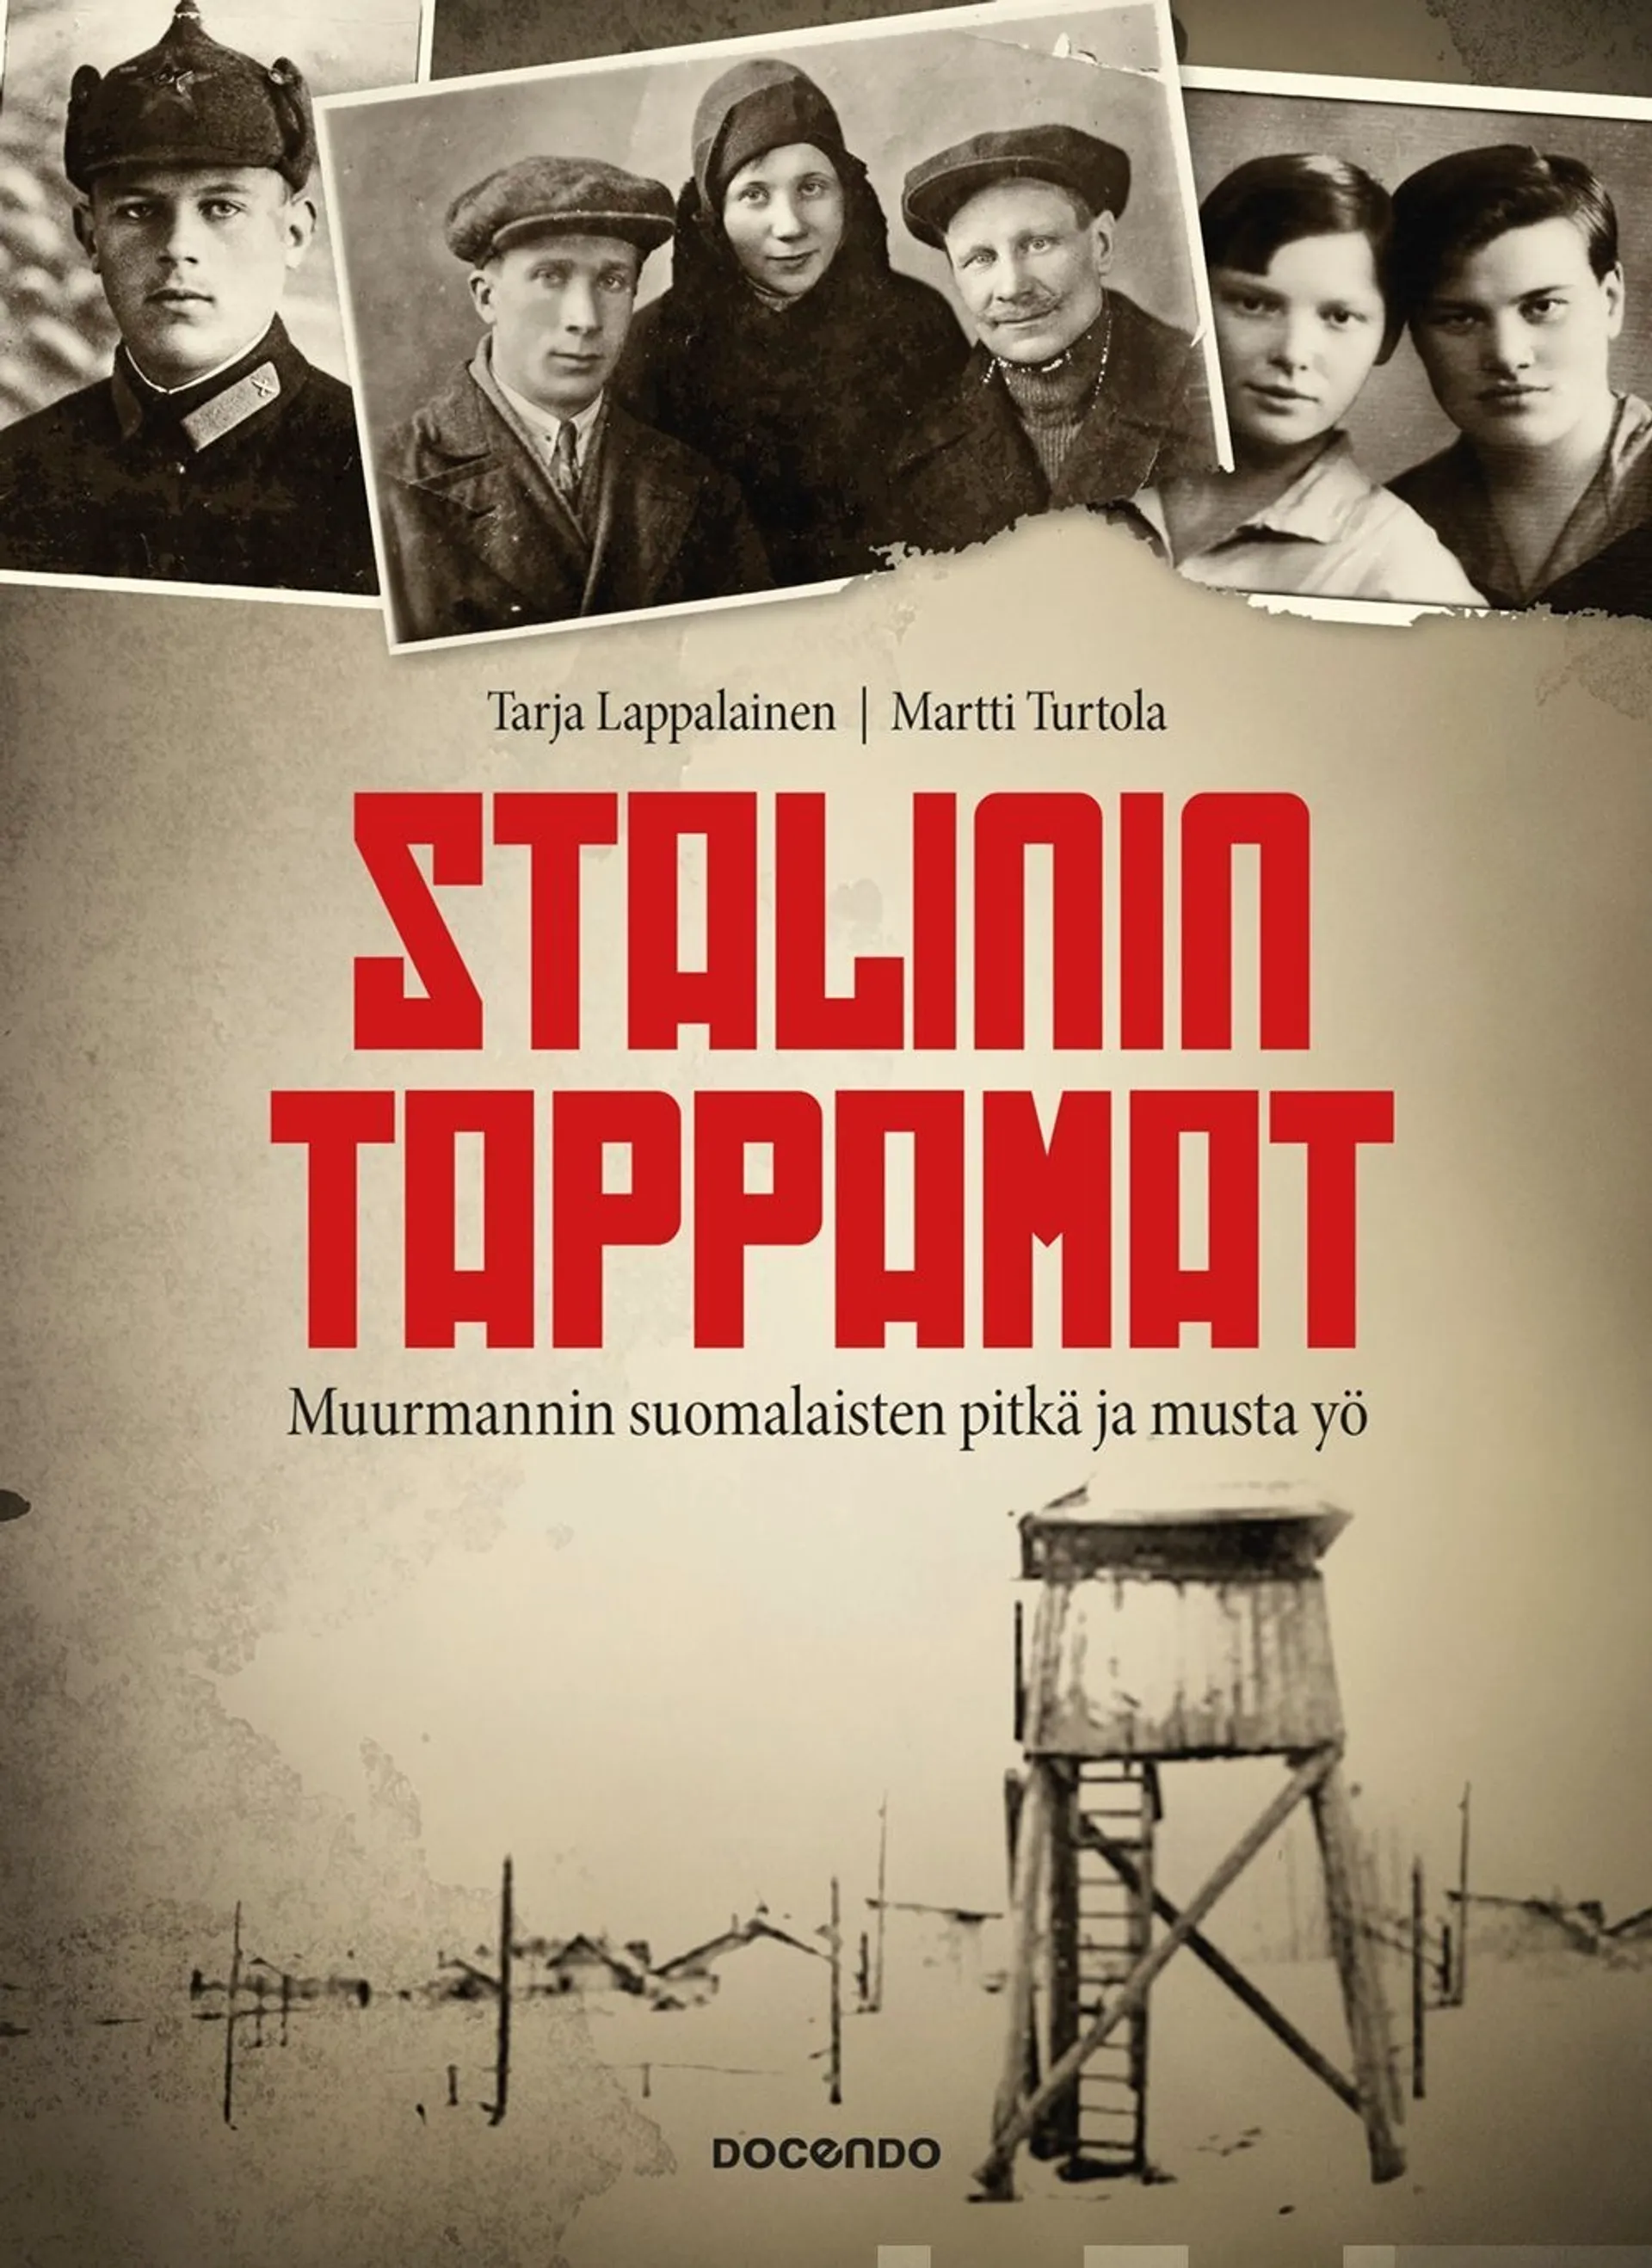 Lappalainen, Stalinin tappamat - Muurmannin suomalaisten pitkä ja musta yö